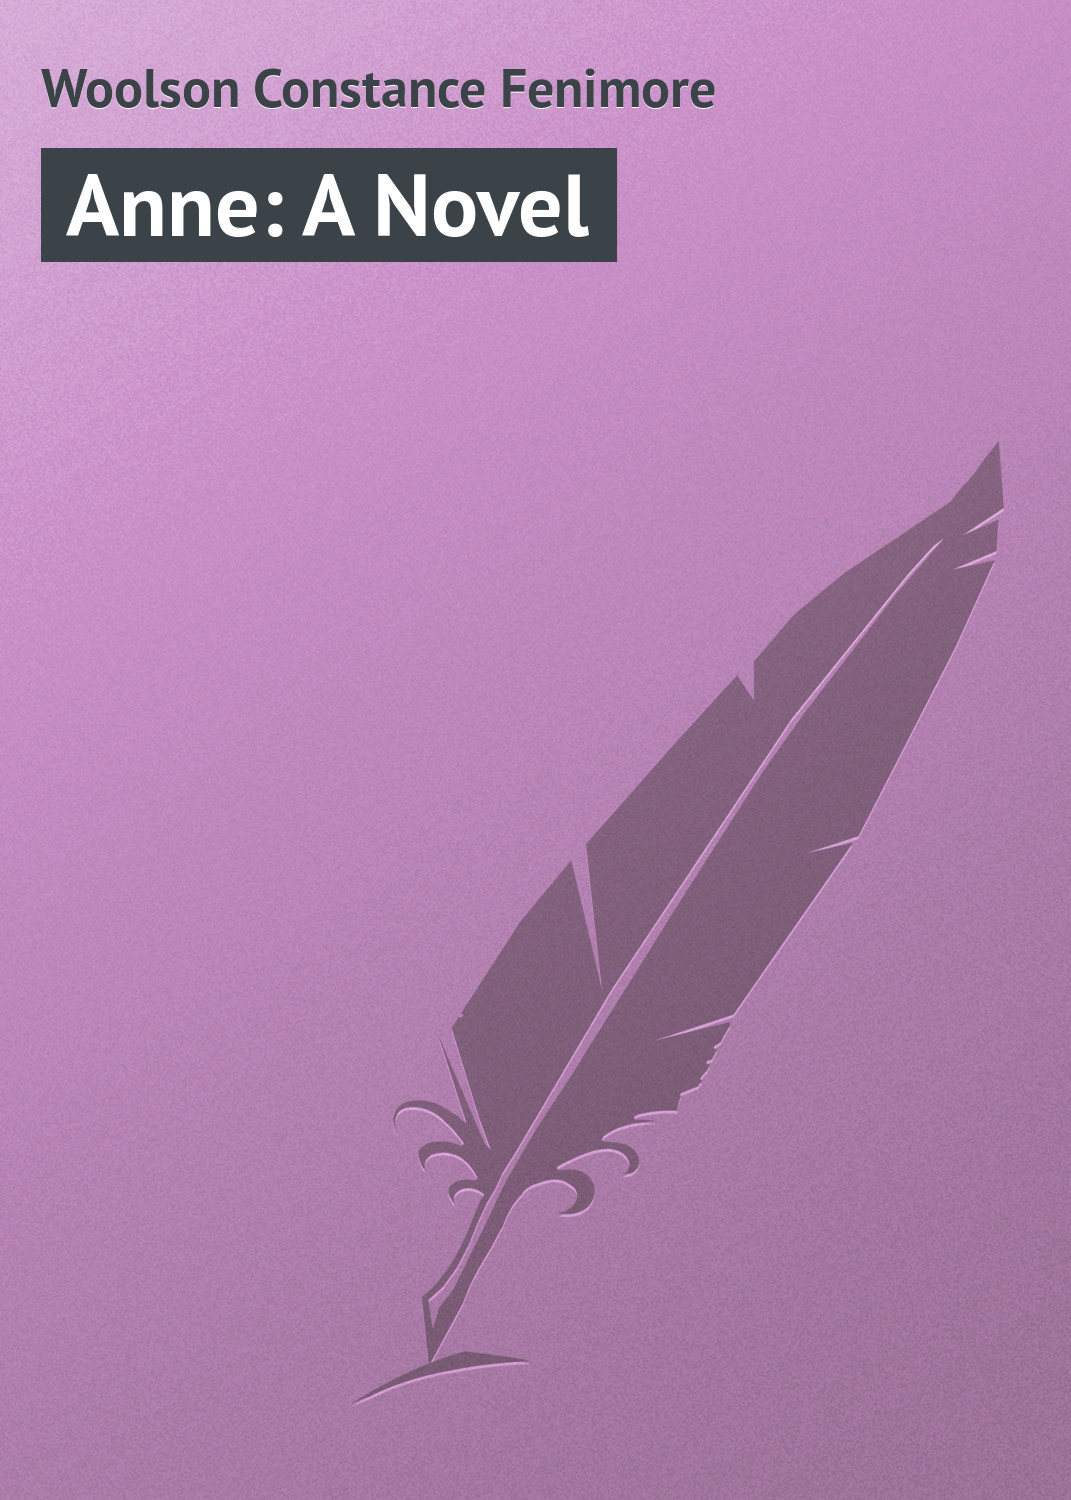 Книга Anne: A Novel из серии , созданная Constance Woolson, может относится к жанру Классические детективы, Зарубежные детективы, Зарубежная классика. Стоимость электронной книги Anne: A Novel с идентификатором 23157459 составляет 5.99 руб.